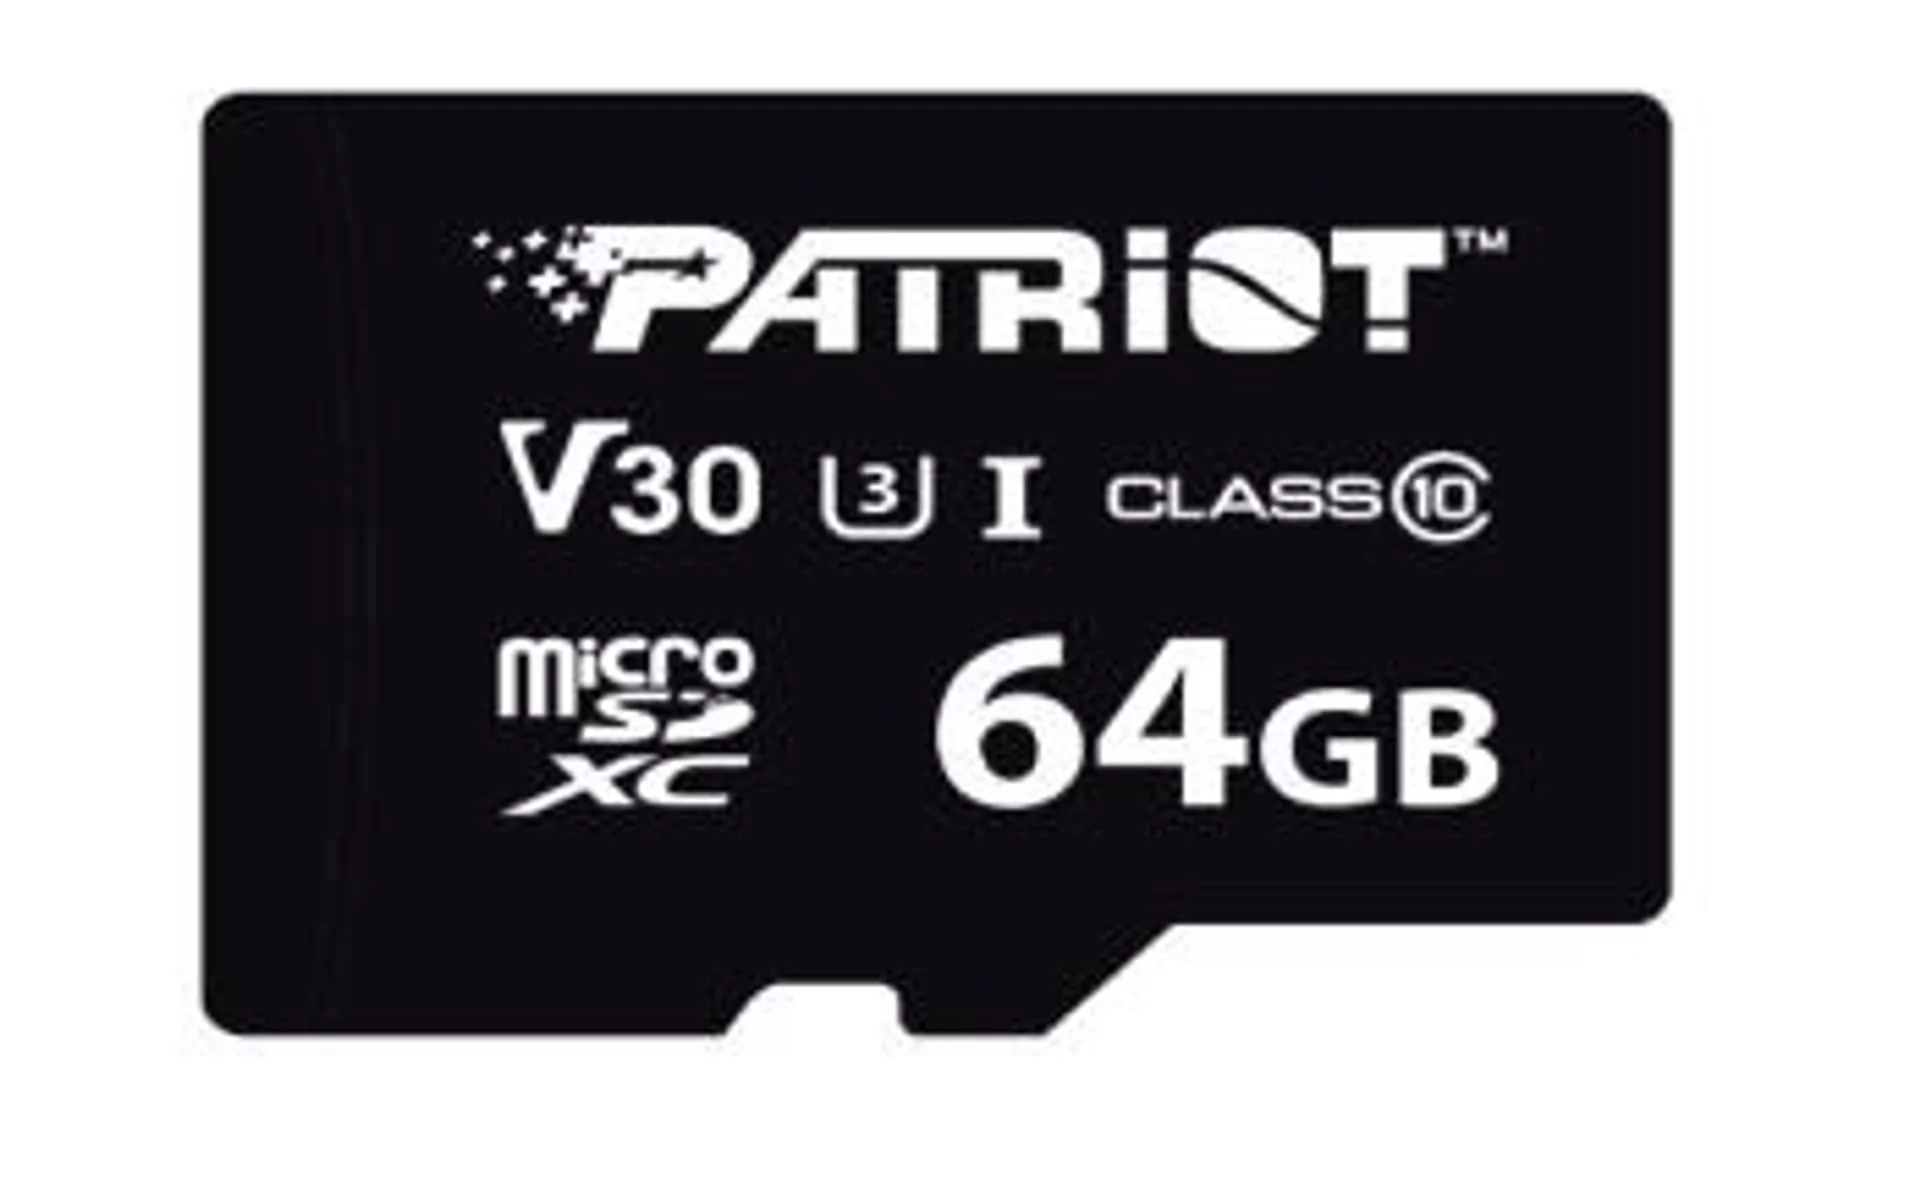 Patriot 64GB VX microSDXC UHS-I U3 V30 - darmowy odbiór w 22 miastach i bezpłatny zwrot Paczkomatem aż do 15 dni